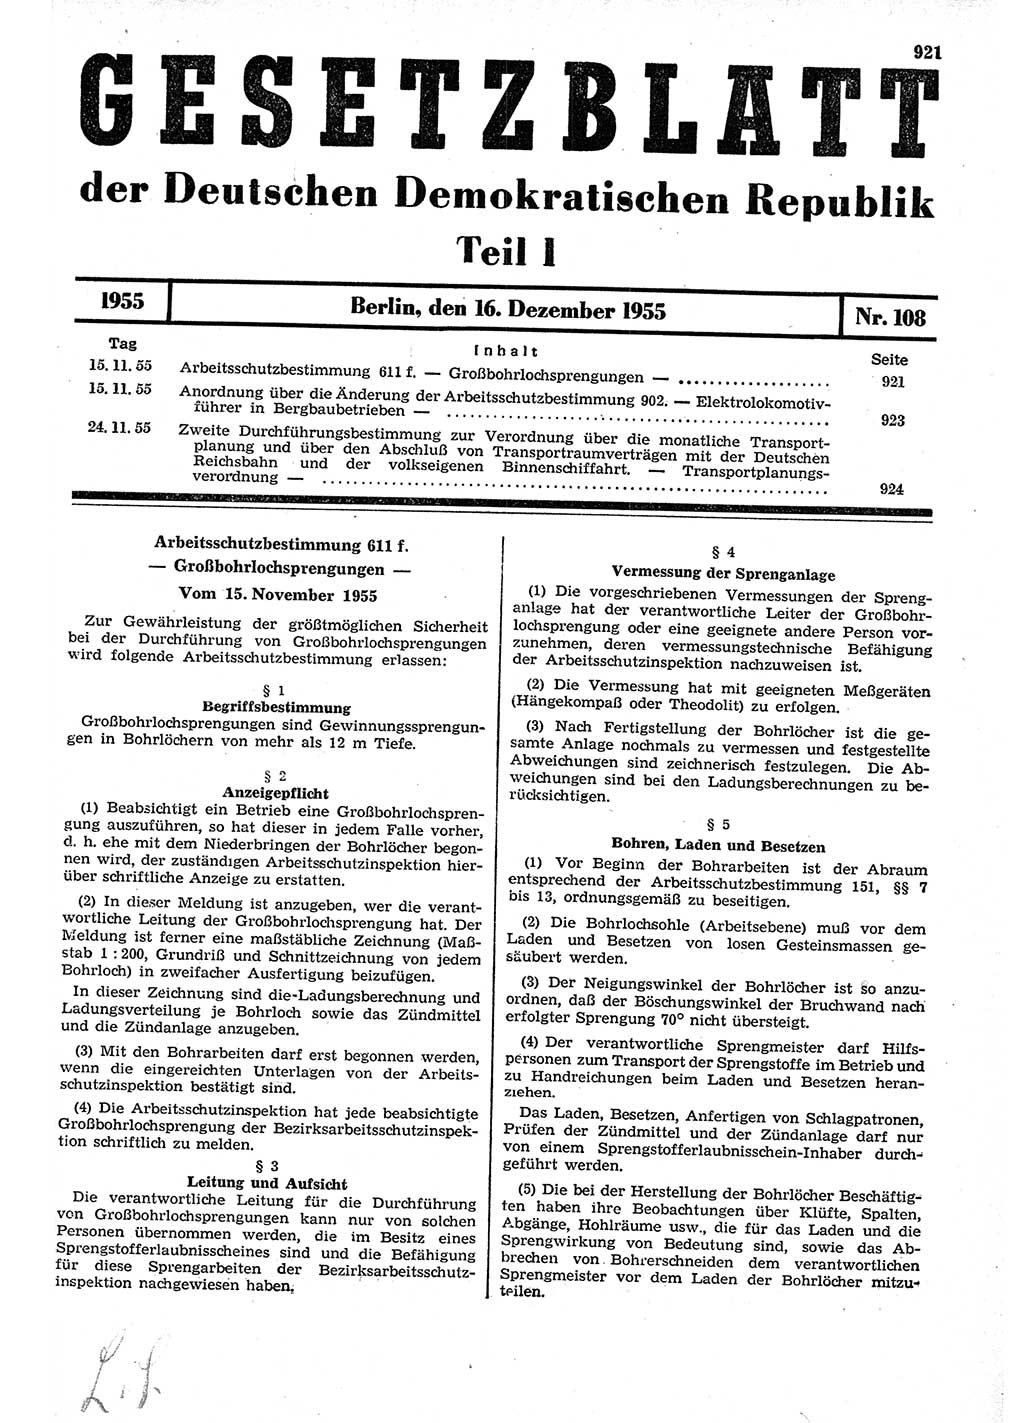 Gesetzblatt (GBl.) der Deutschen Demokratischen Republik (DDR) Teil Ⅰ 1955, Seite 921 (GBl. DDR Ⅰ 1955, S. 921)